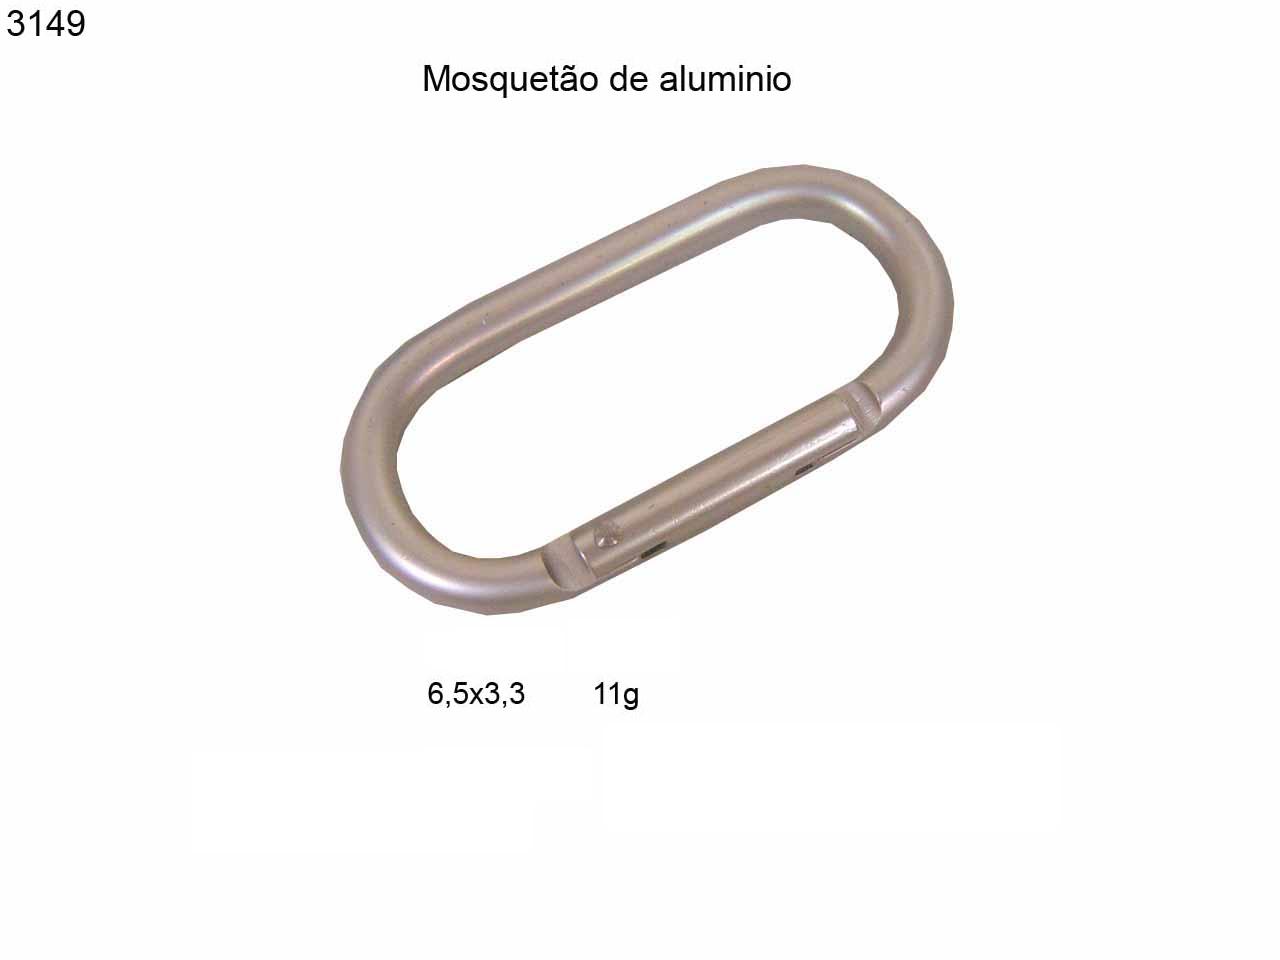 Mosquetao de aluminio (3149)